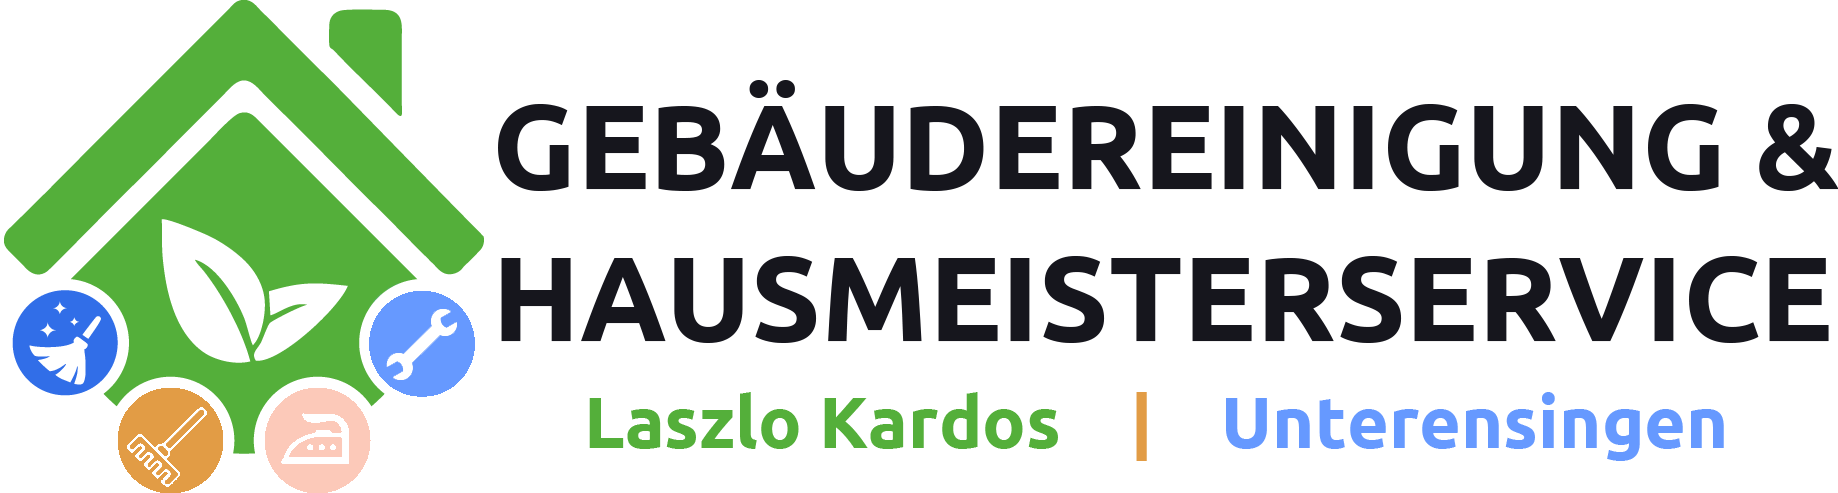 Gebäudereinigung und Hausmeisterservice Laszlo Kardos Einzelunternehmer